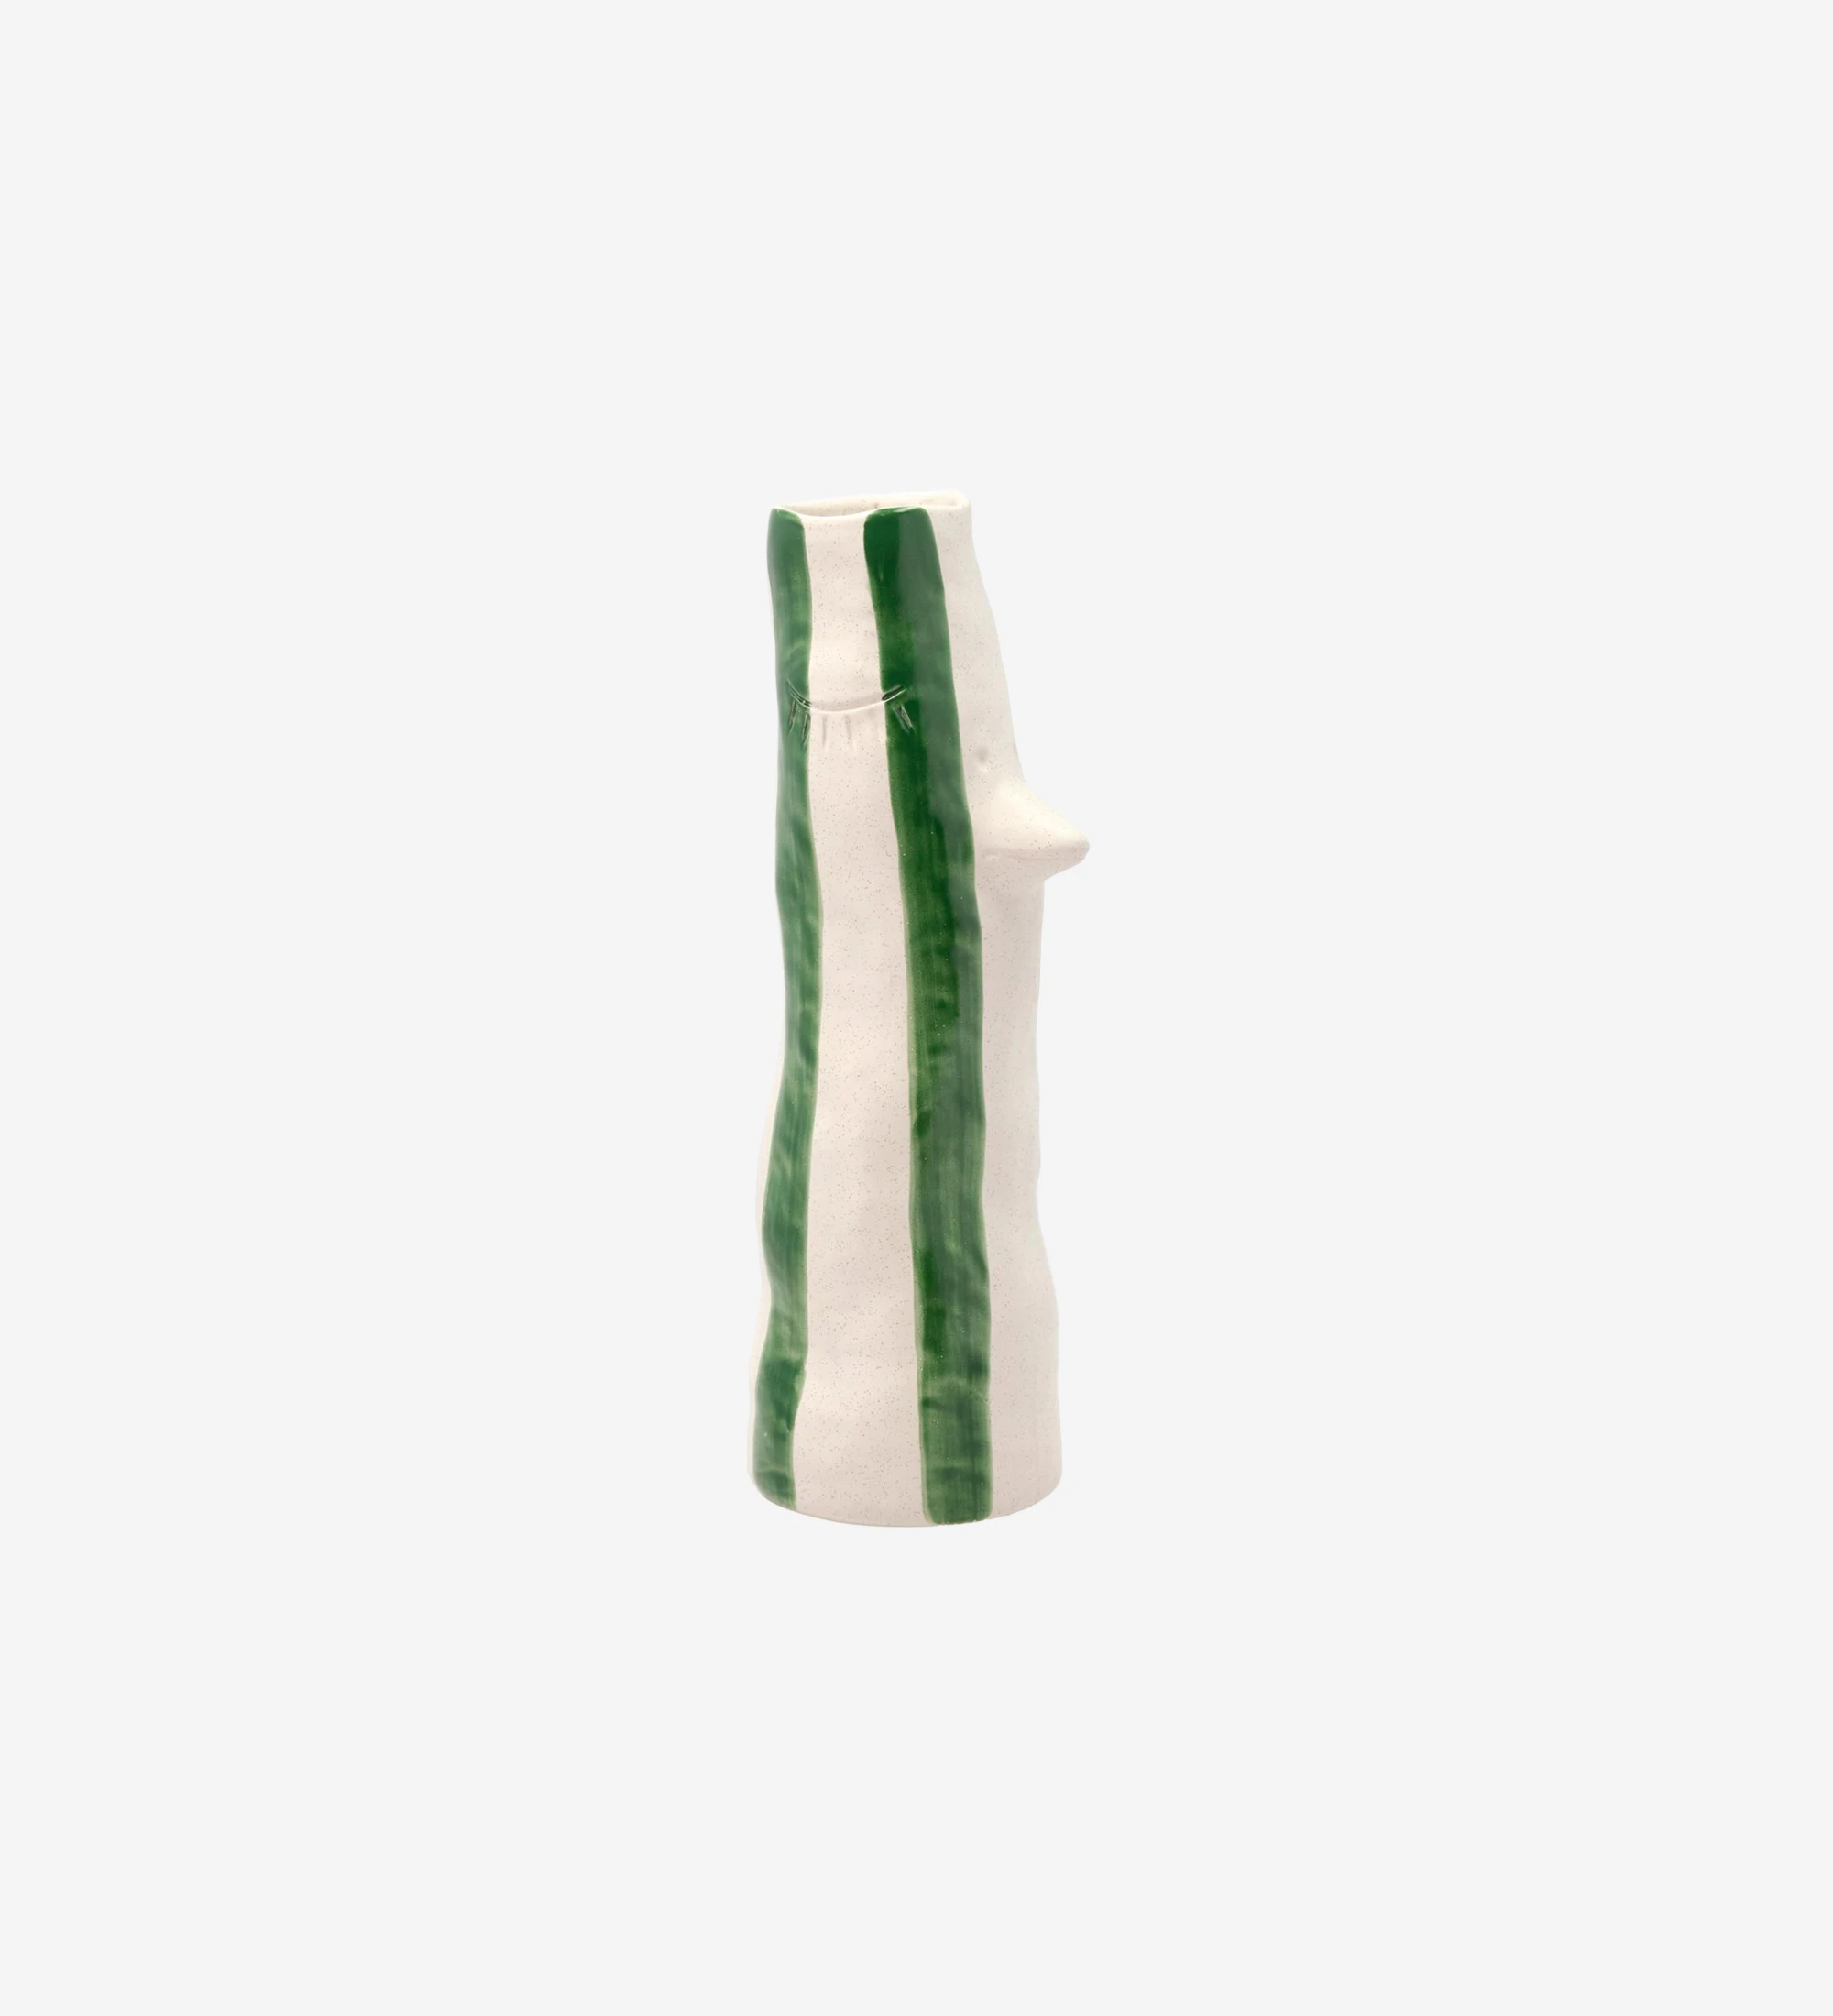 Jarrón de gres con pico y pestañas, decorado con rayas verdes pintadas a mano.